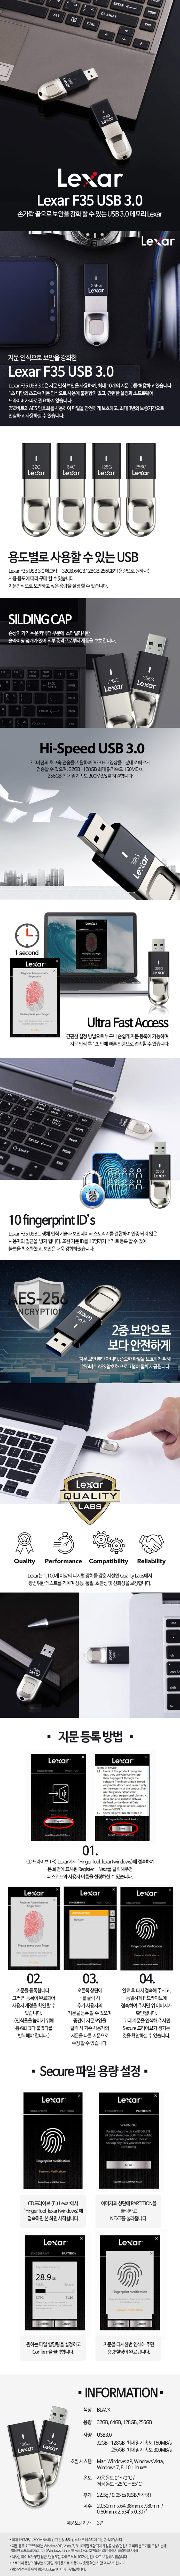 렉사 Lexar JumpDrive 지문 보안 F35 USB 3.0 32GB 39,900원 - 렉사 디지털, PC저장장치, USB, USB 바보사랑 렉사 Lexar JumpDrive 지문 보안 F35 USB 3.0 32GB 39,900원 - 렉사 디지털, PC저장장치, USB, USB 바보사랑